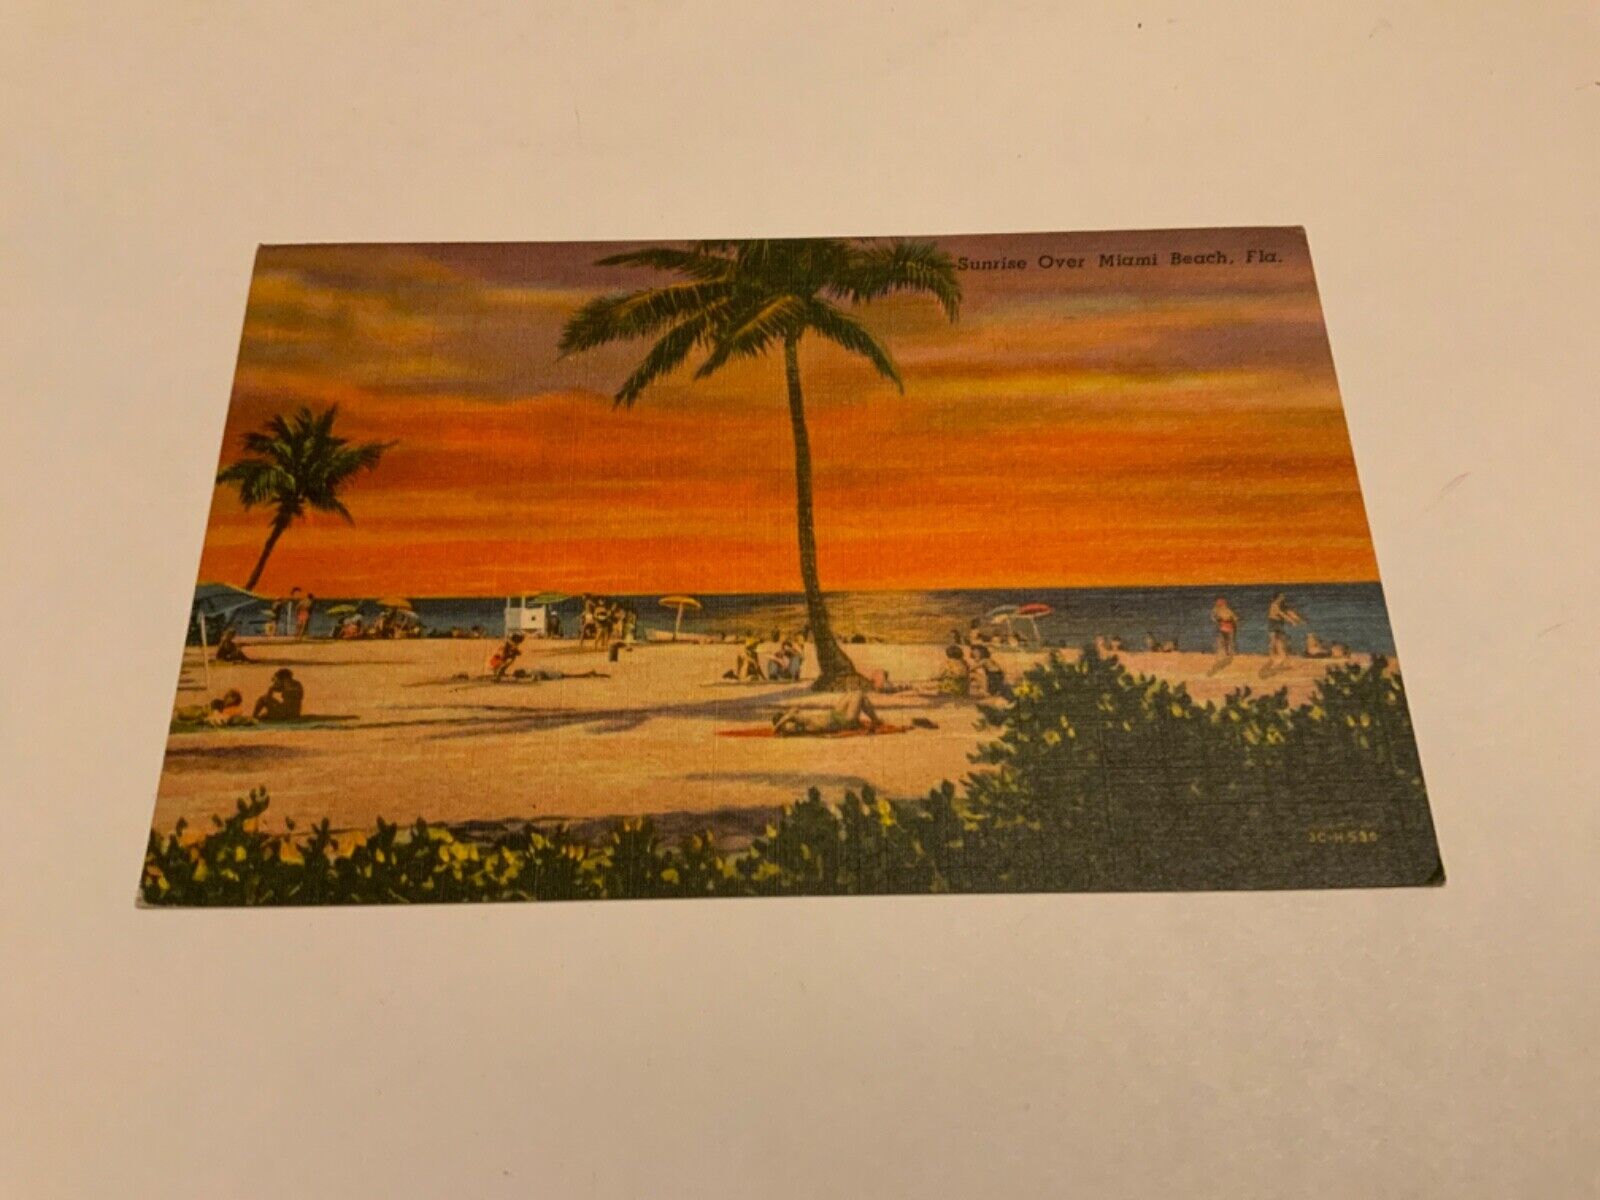 Miami, Fla. ~ Sunrise Over Miami Beach - Beach Scene-1960 Linen Vintage Postcard